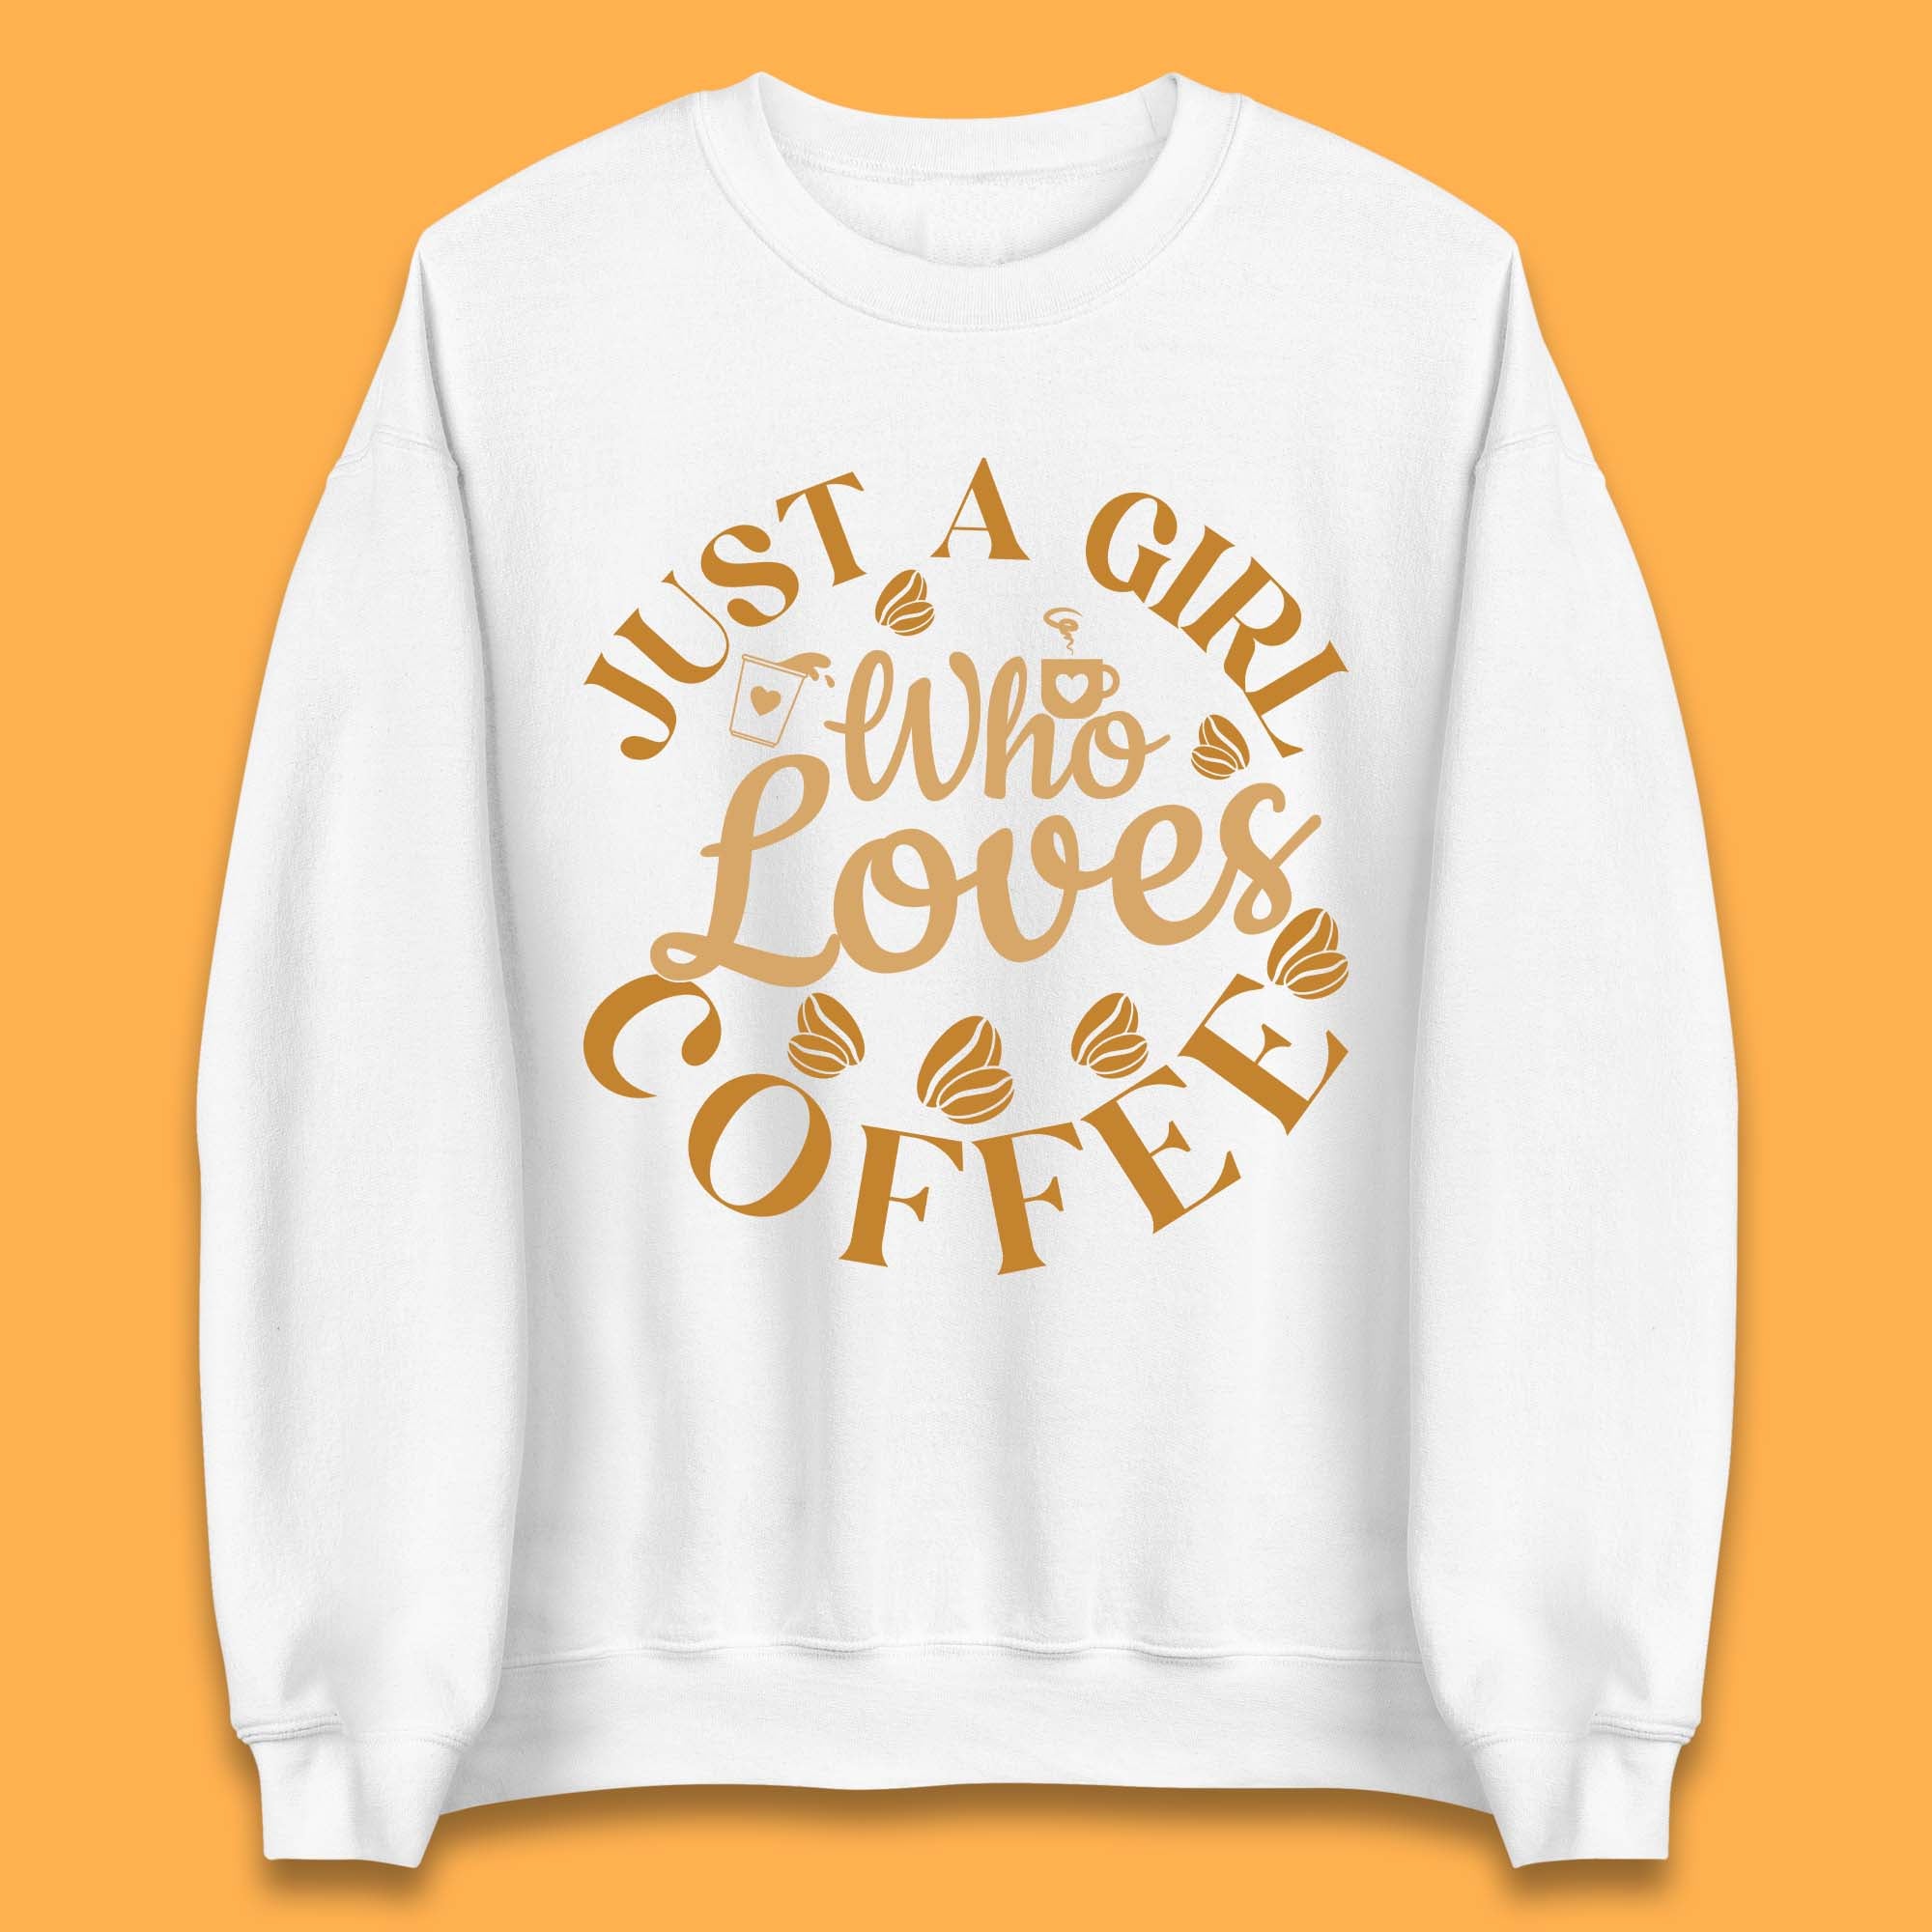 Coffee Enthusiast Sweatshirt